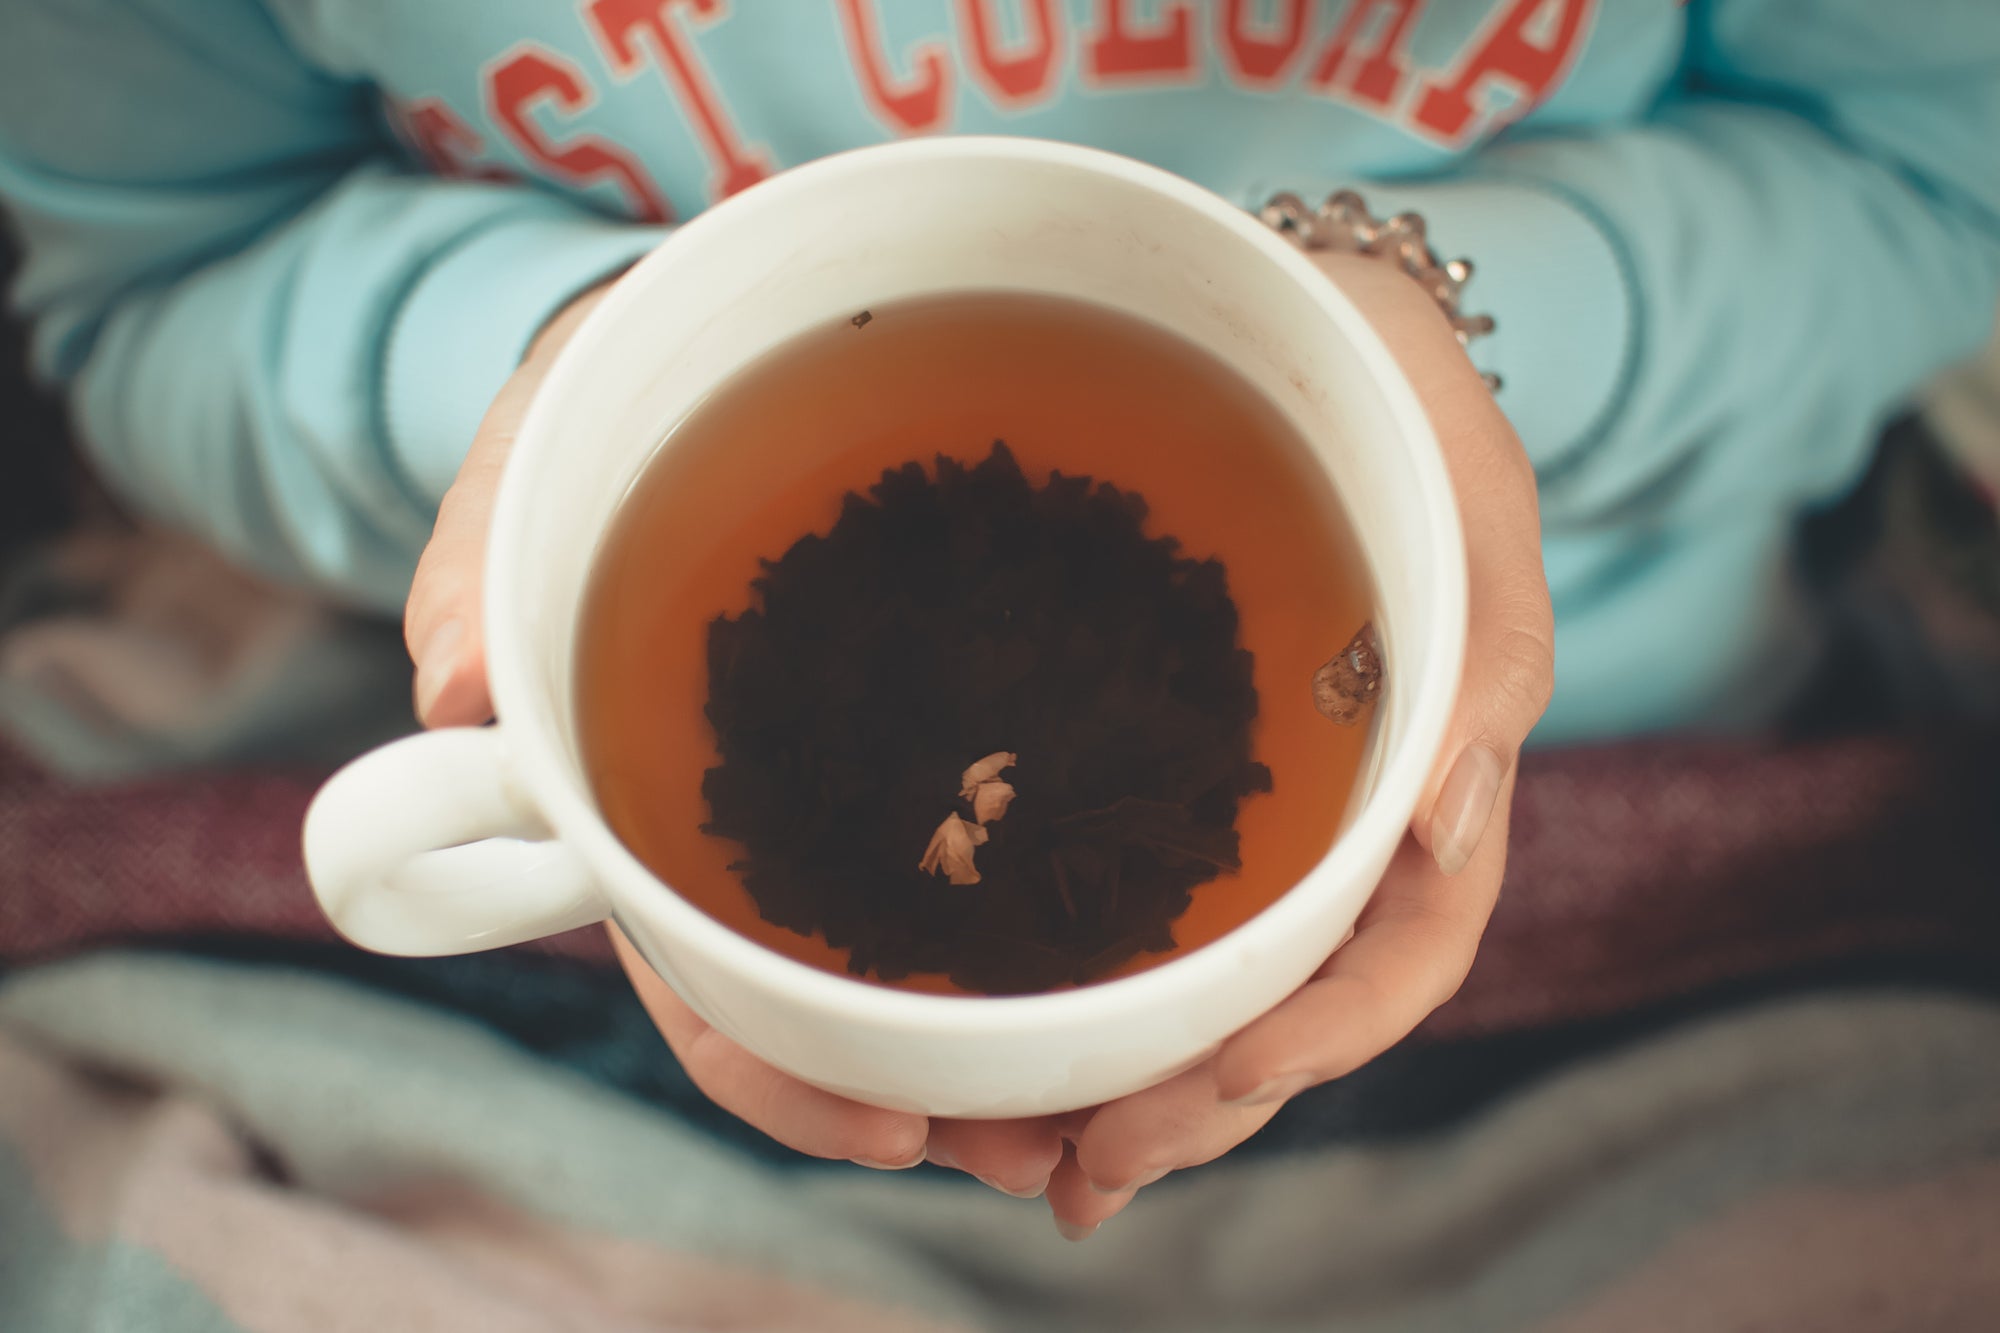 Teerituale: Die Ruhe des Tees